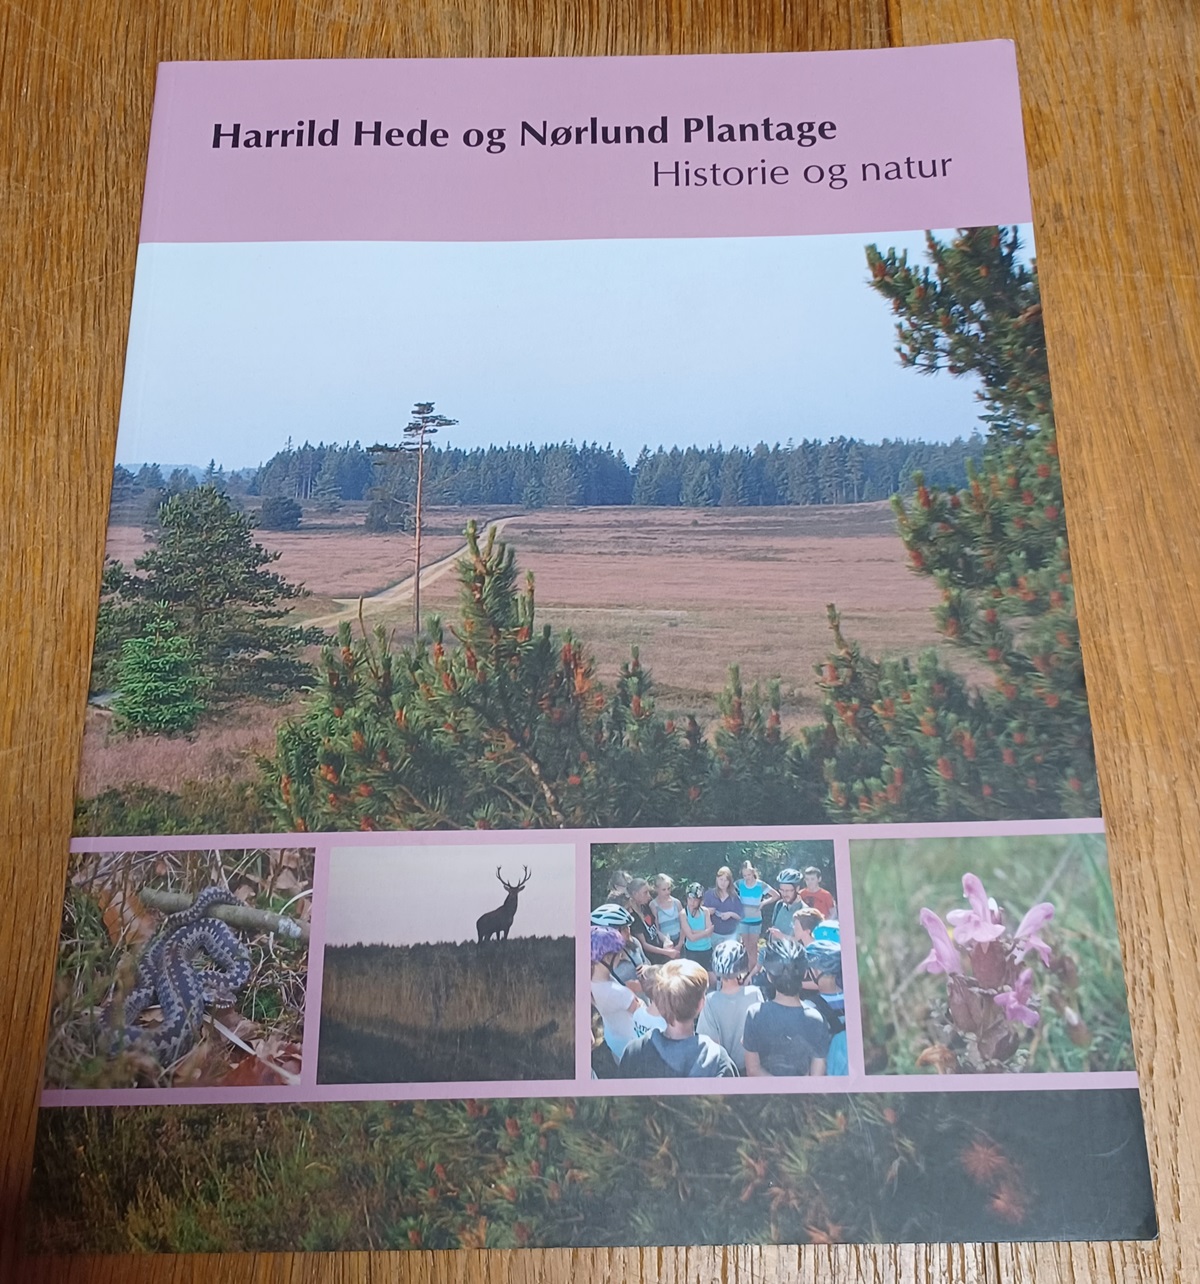 Harrild hede og Nørlund plantage